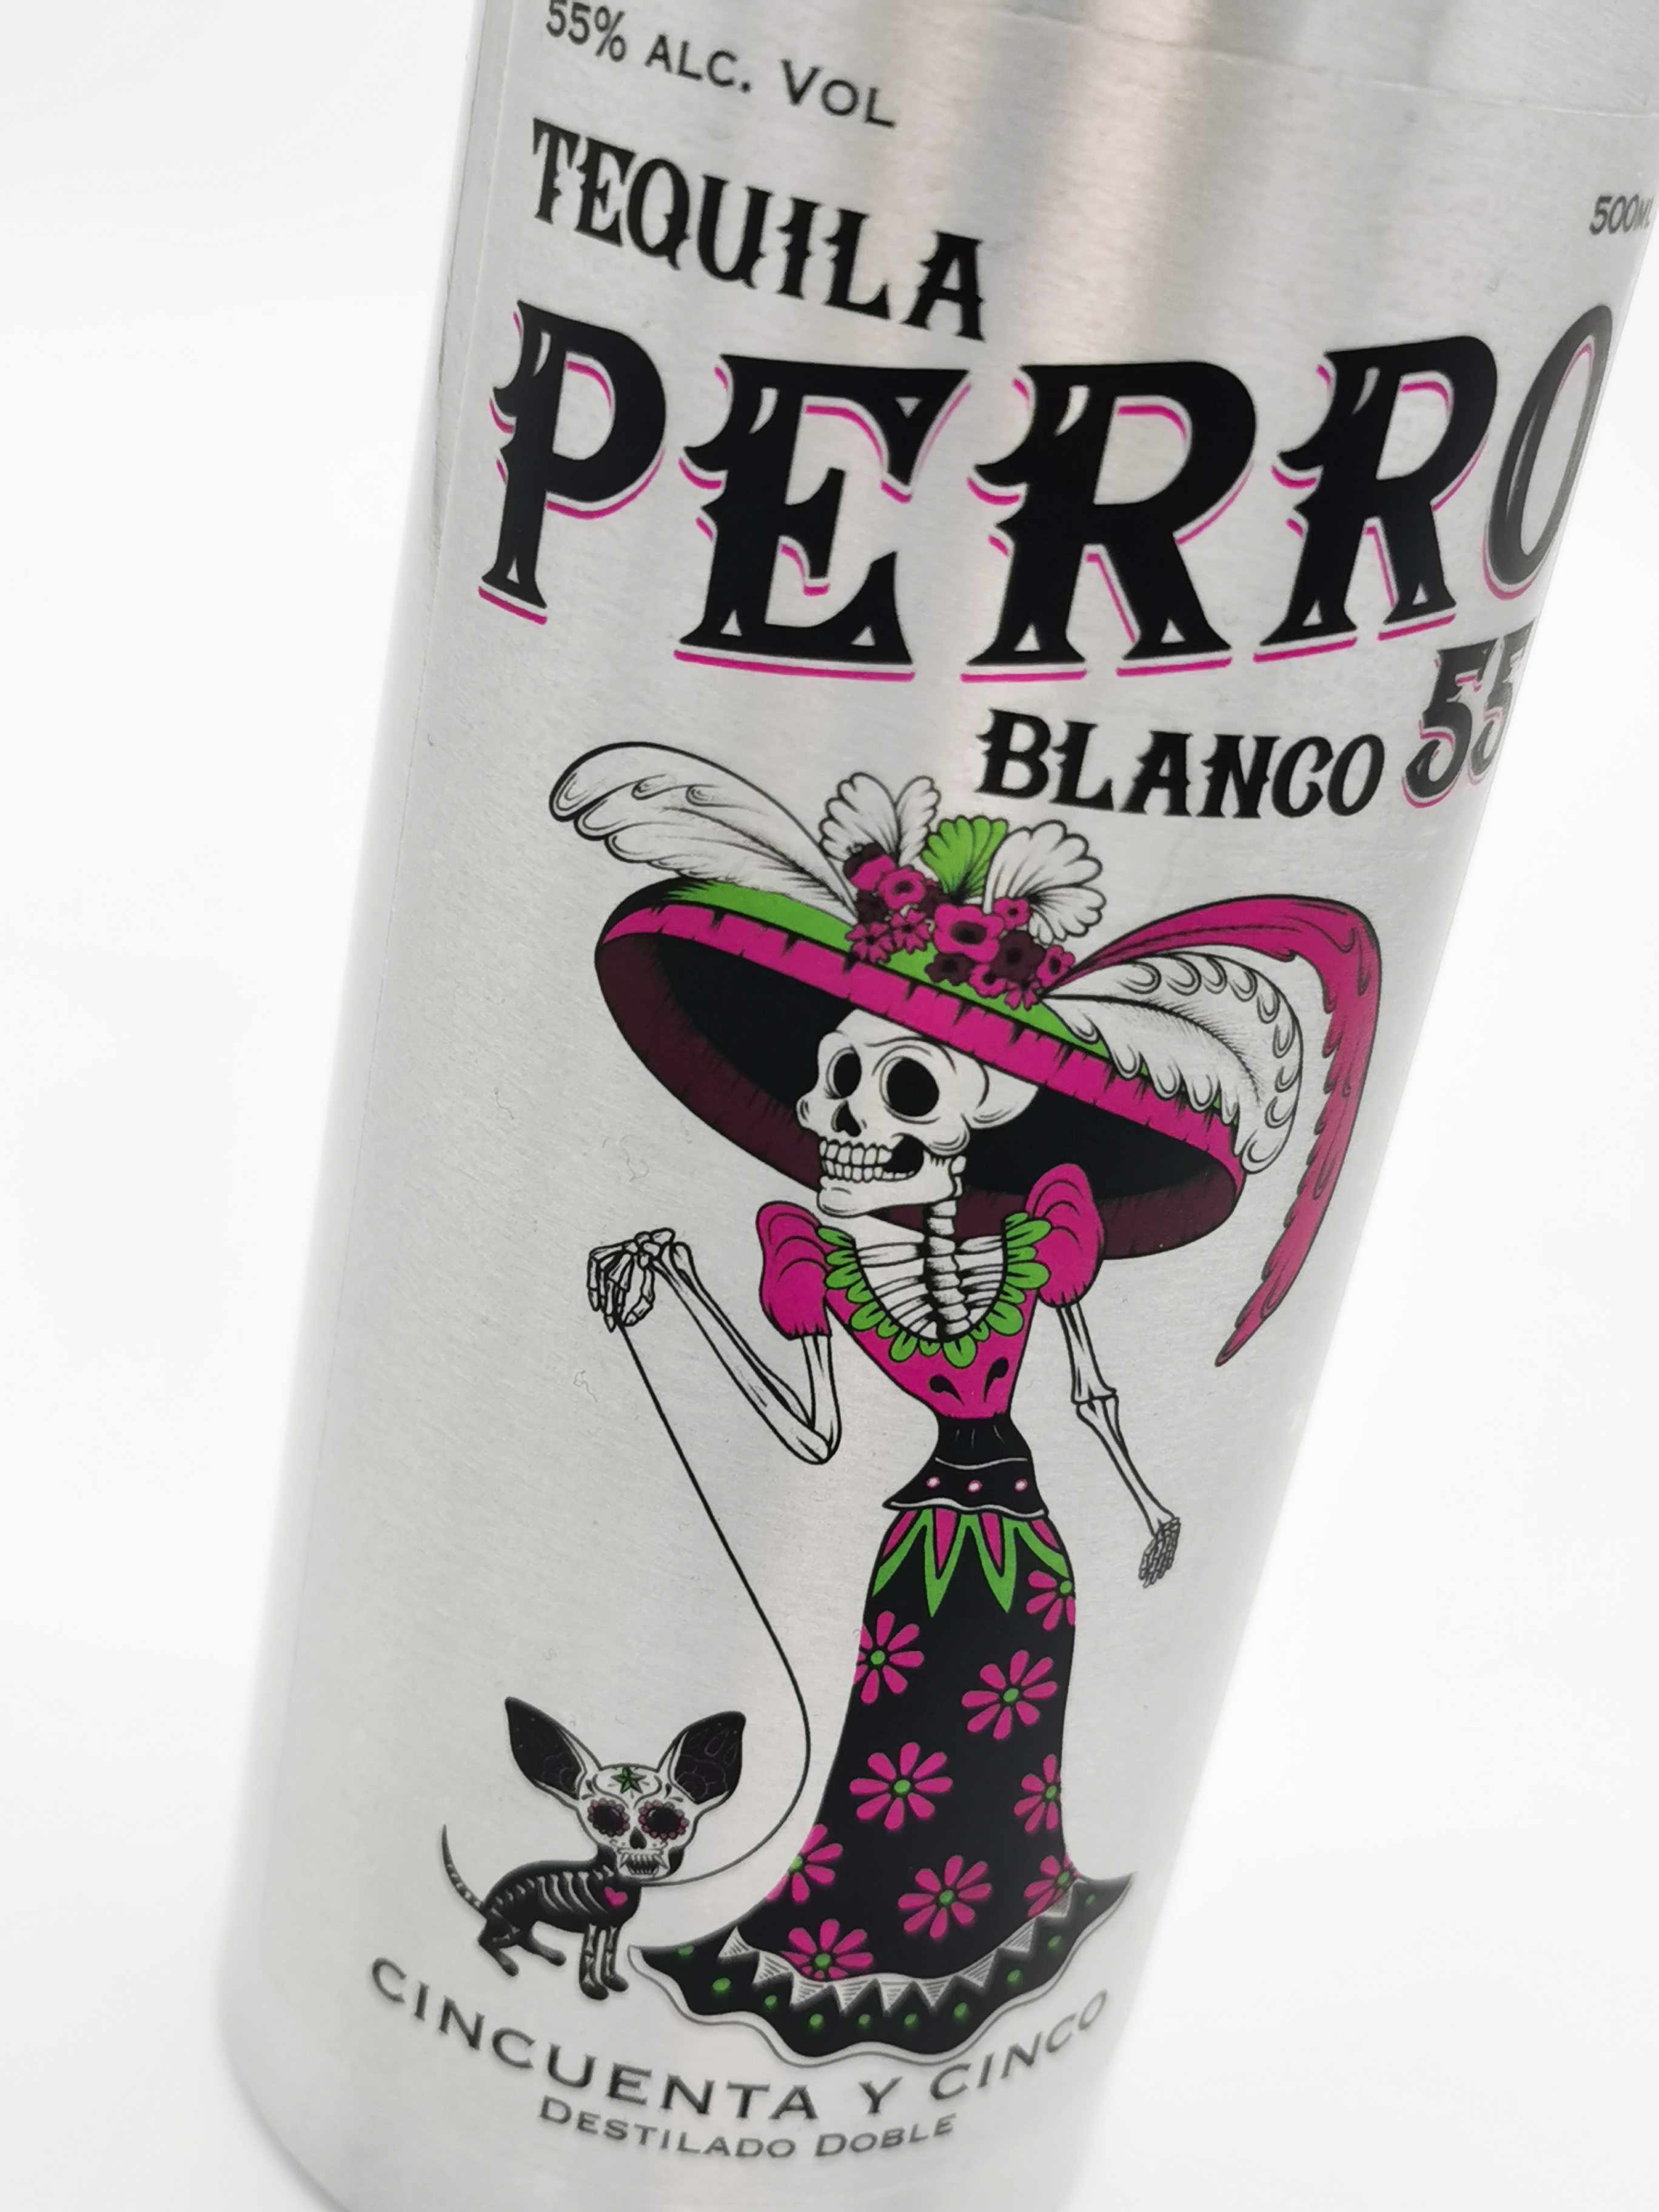 Tequila PERRO 55 - 55% Alc. Vol.